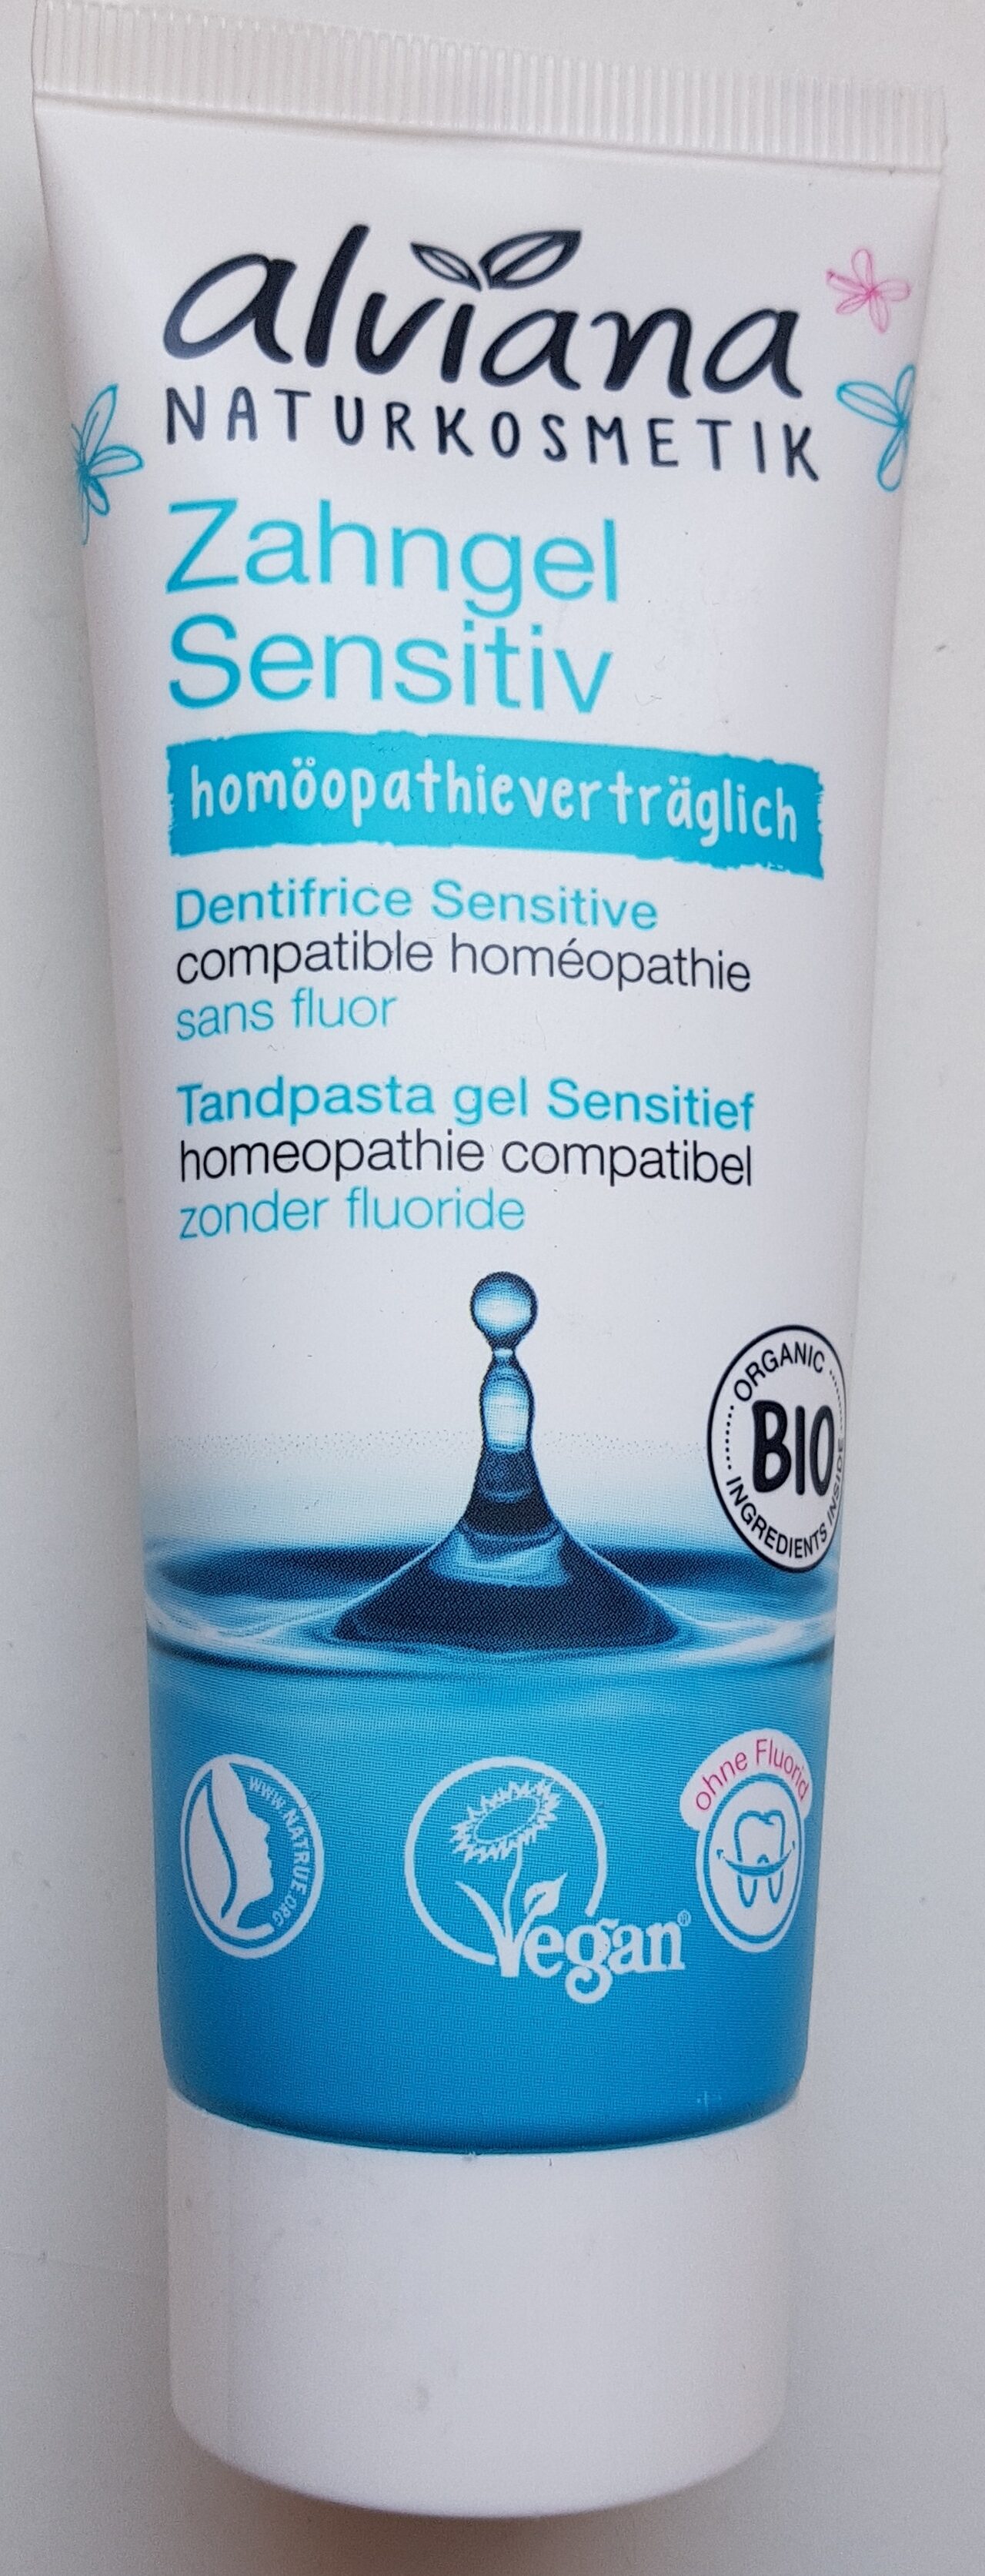 Dentifrice sensitive compatible homéopathie sans fluor - Product - fr